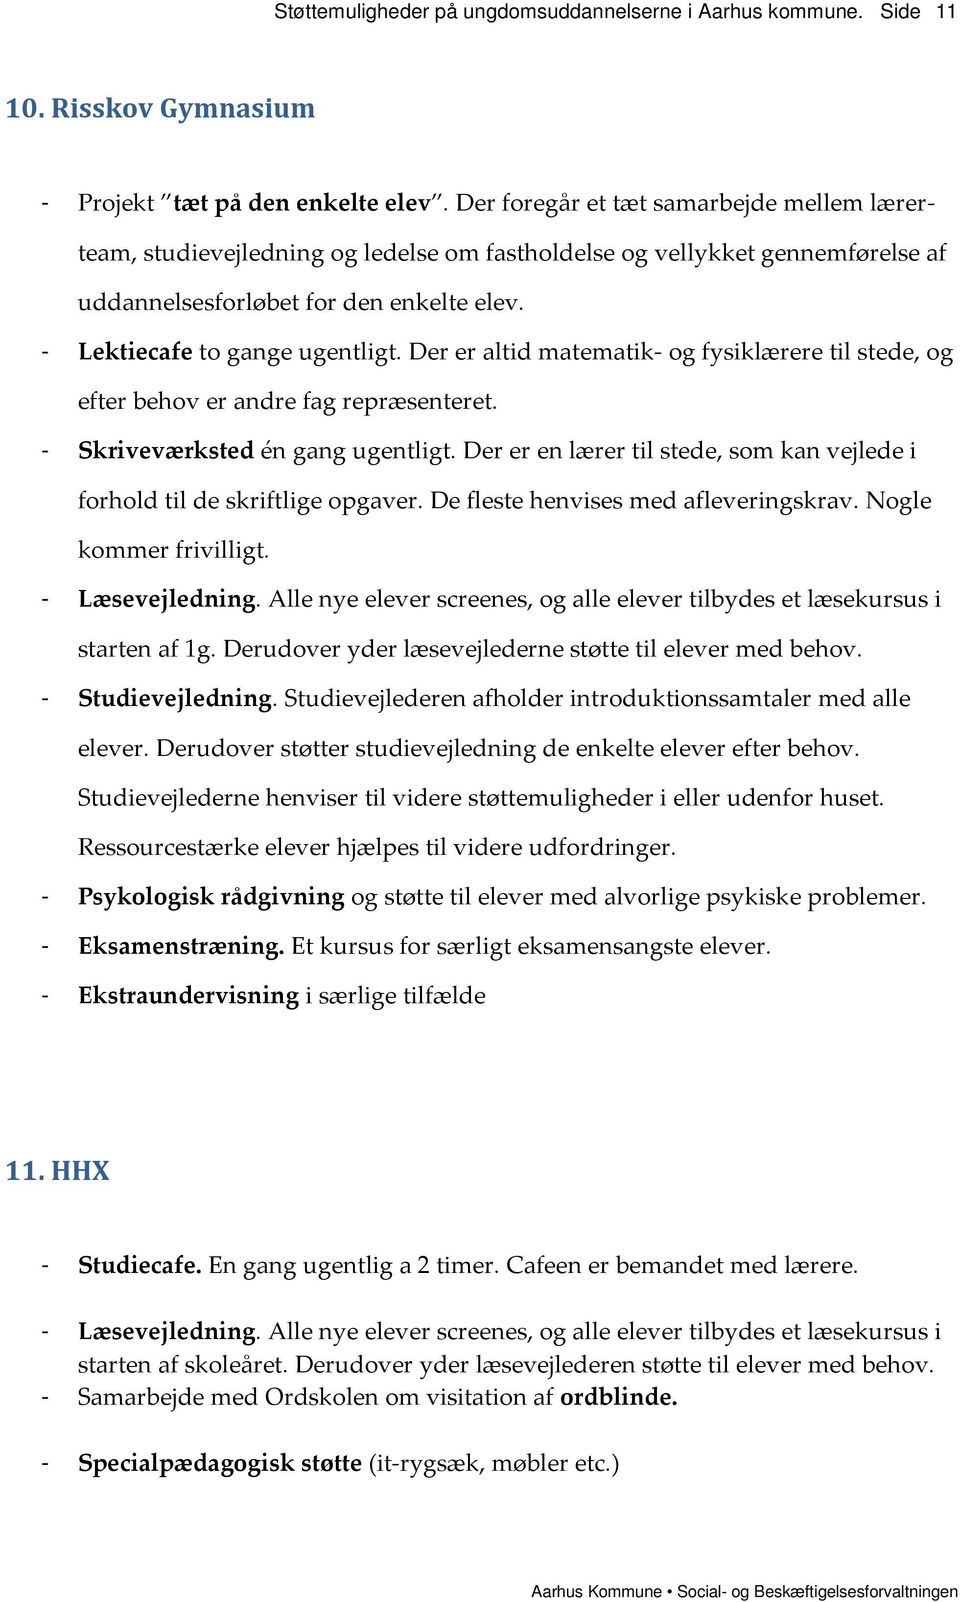 Støttemuligheder på ungdomsuddannelserne i Aarhus Kommune - PDF Gratis  download